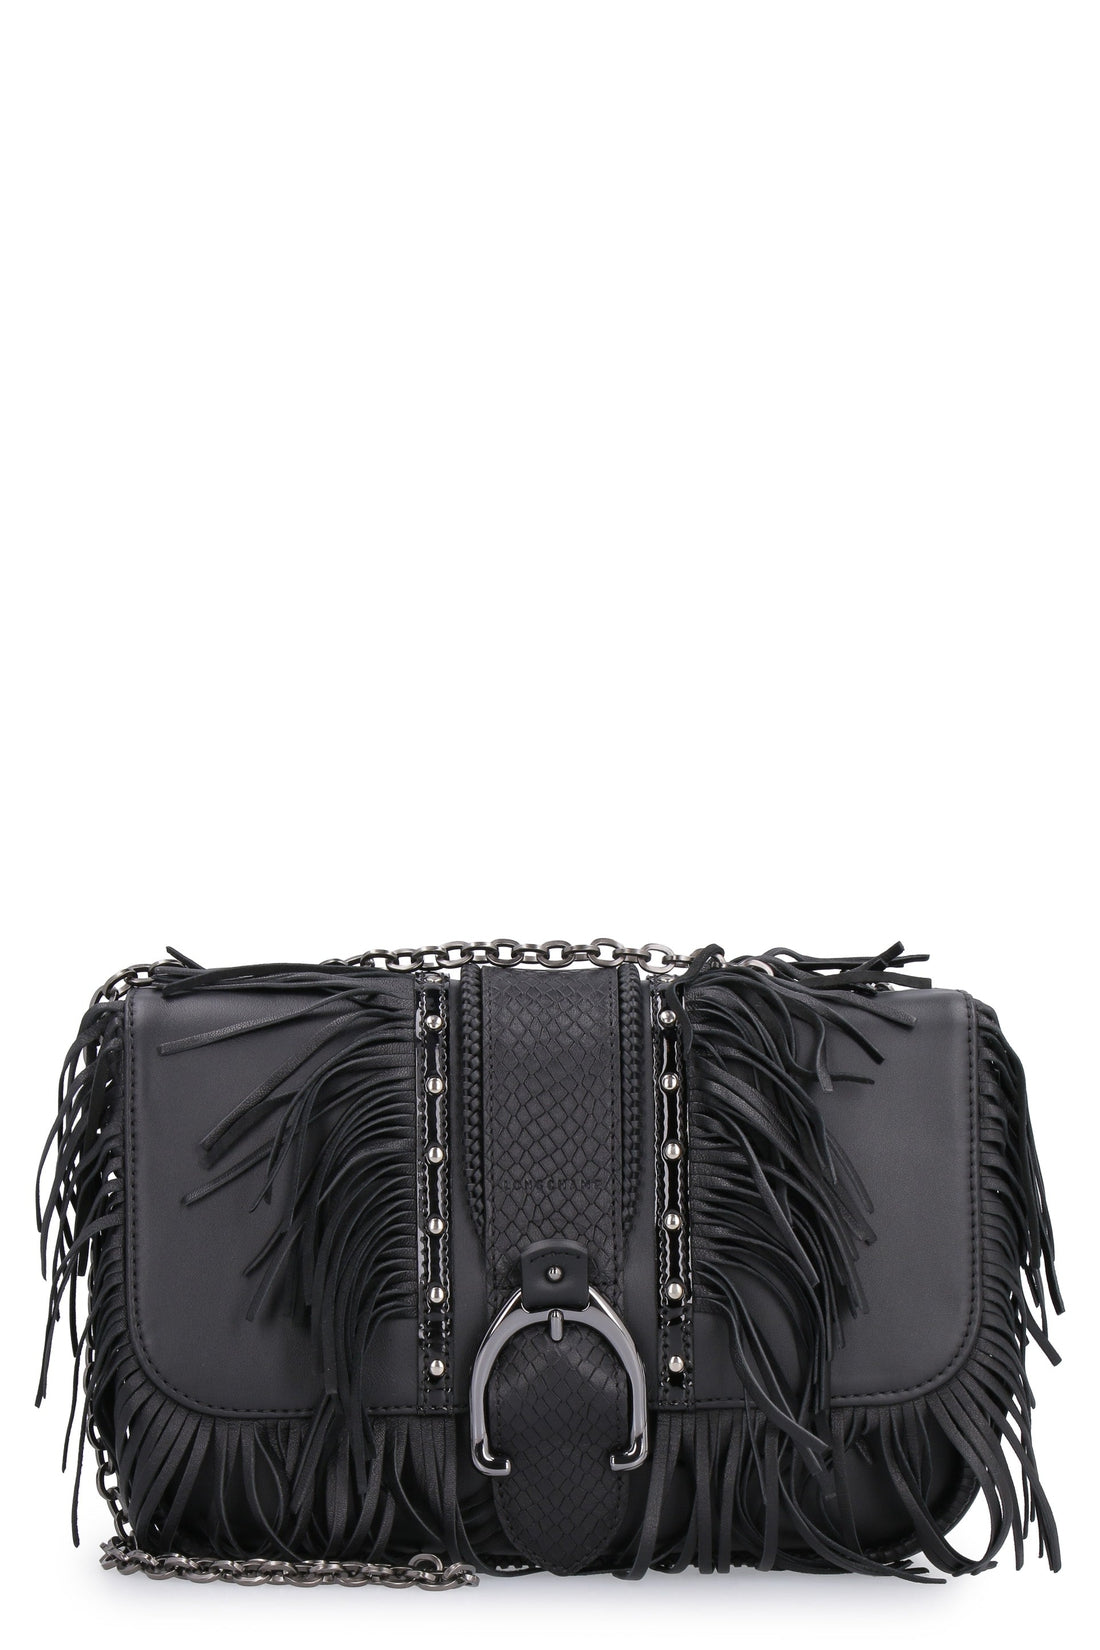 Longchamp-OUTLET-SALE-Fringed leather shoulder bag-ARCHIVIST